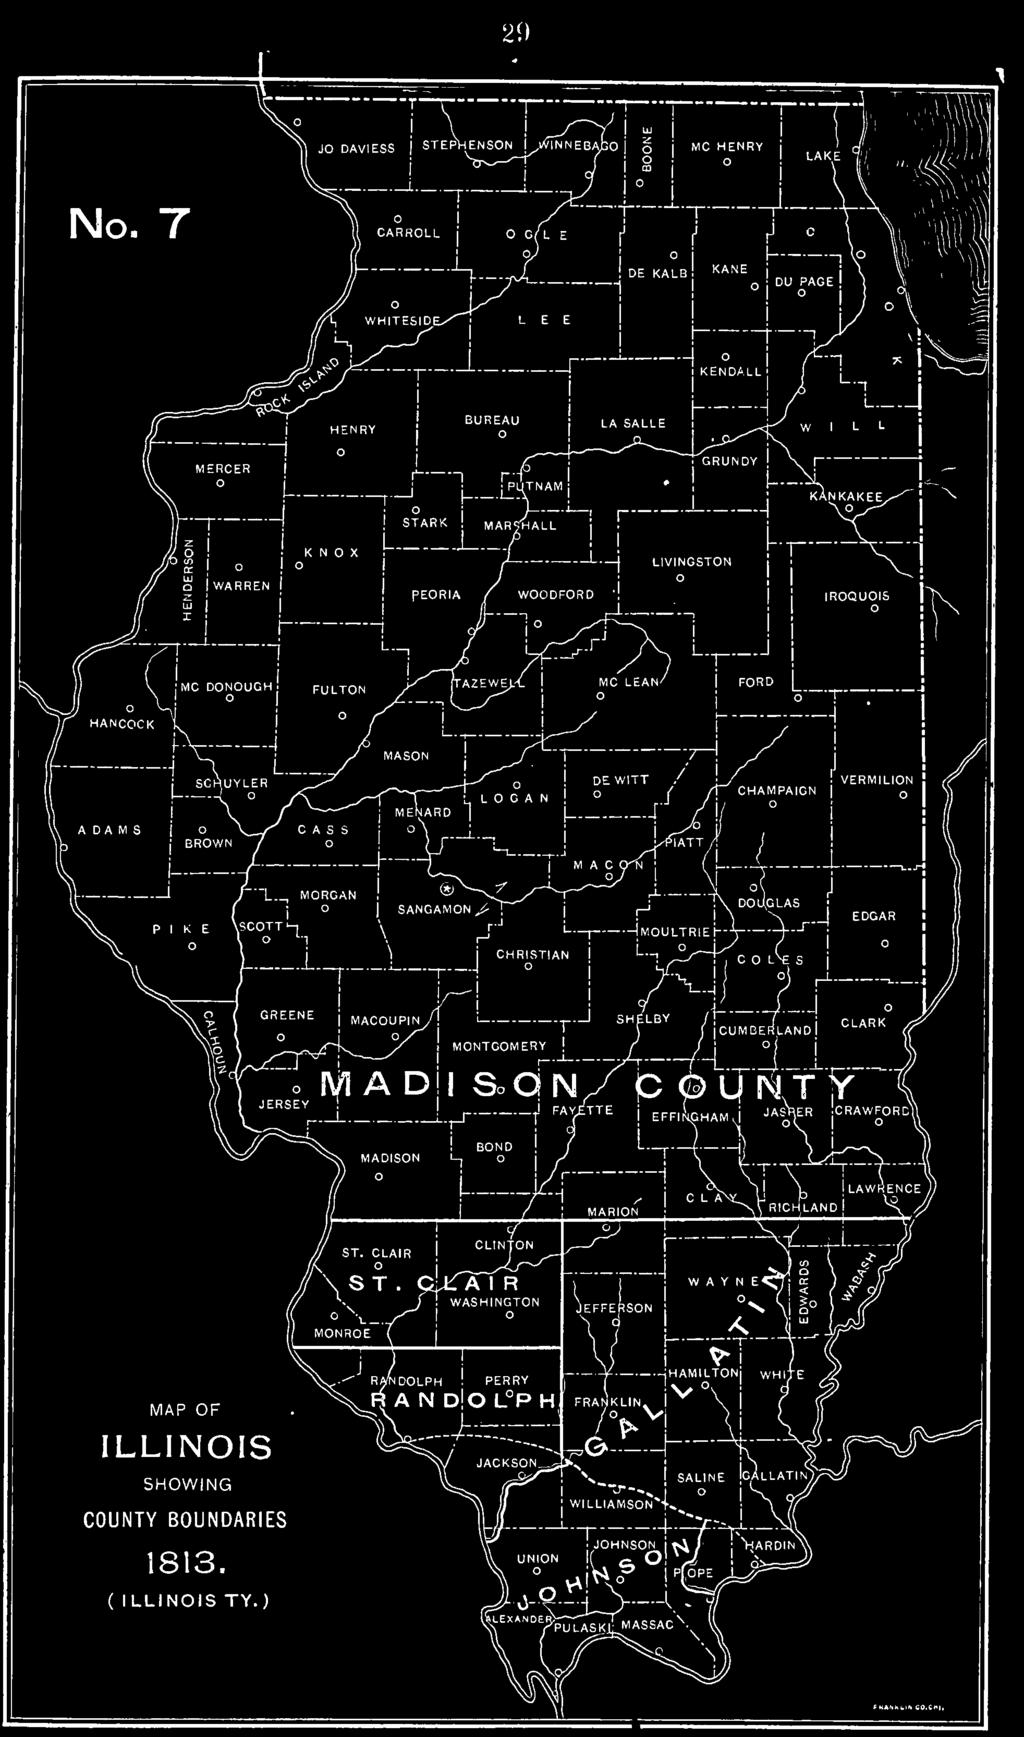 J_ SANGAMON -V J li MONTGOMERY LBY /jcumber'landi hi J- iyi a d i ad n^ p 6 CTisifF BOND L. MADSON 1-, o CLARK J JASHER CRAWF MAP OF LLNOS SHOWNG COUNTY BOUNDARES 1813. ( LLNOS TY.) ST.